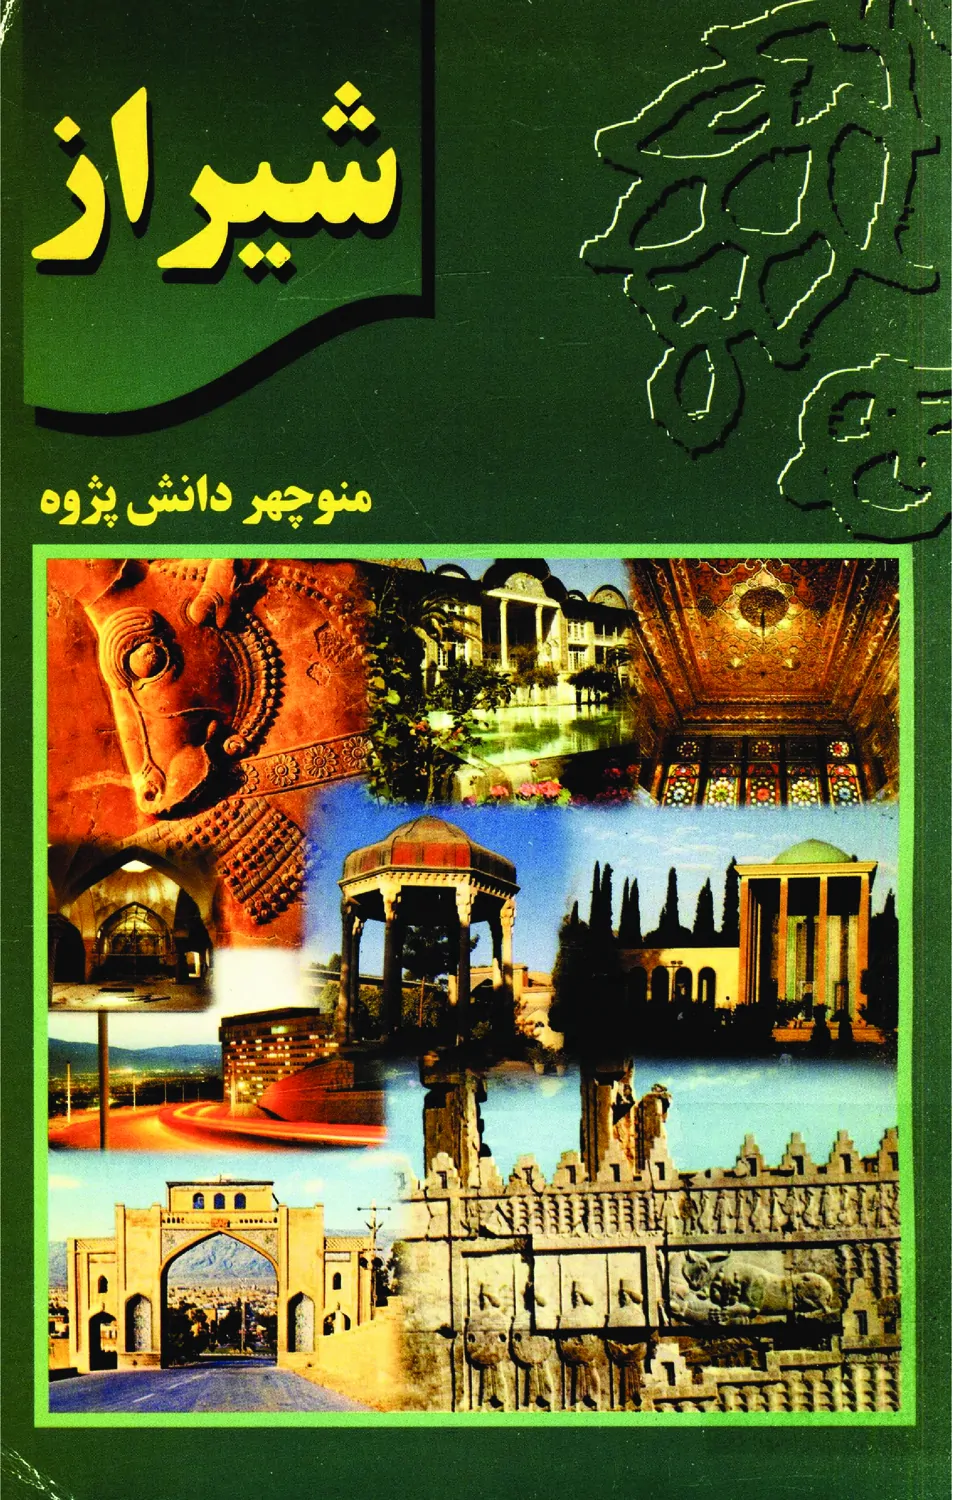 شیراز: نگینی درخشان در فرهنگ و تمدن ایران زمین